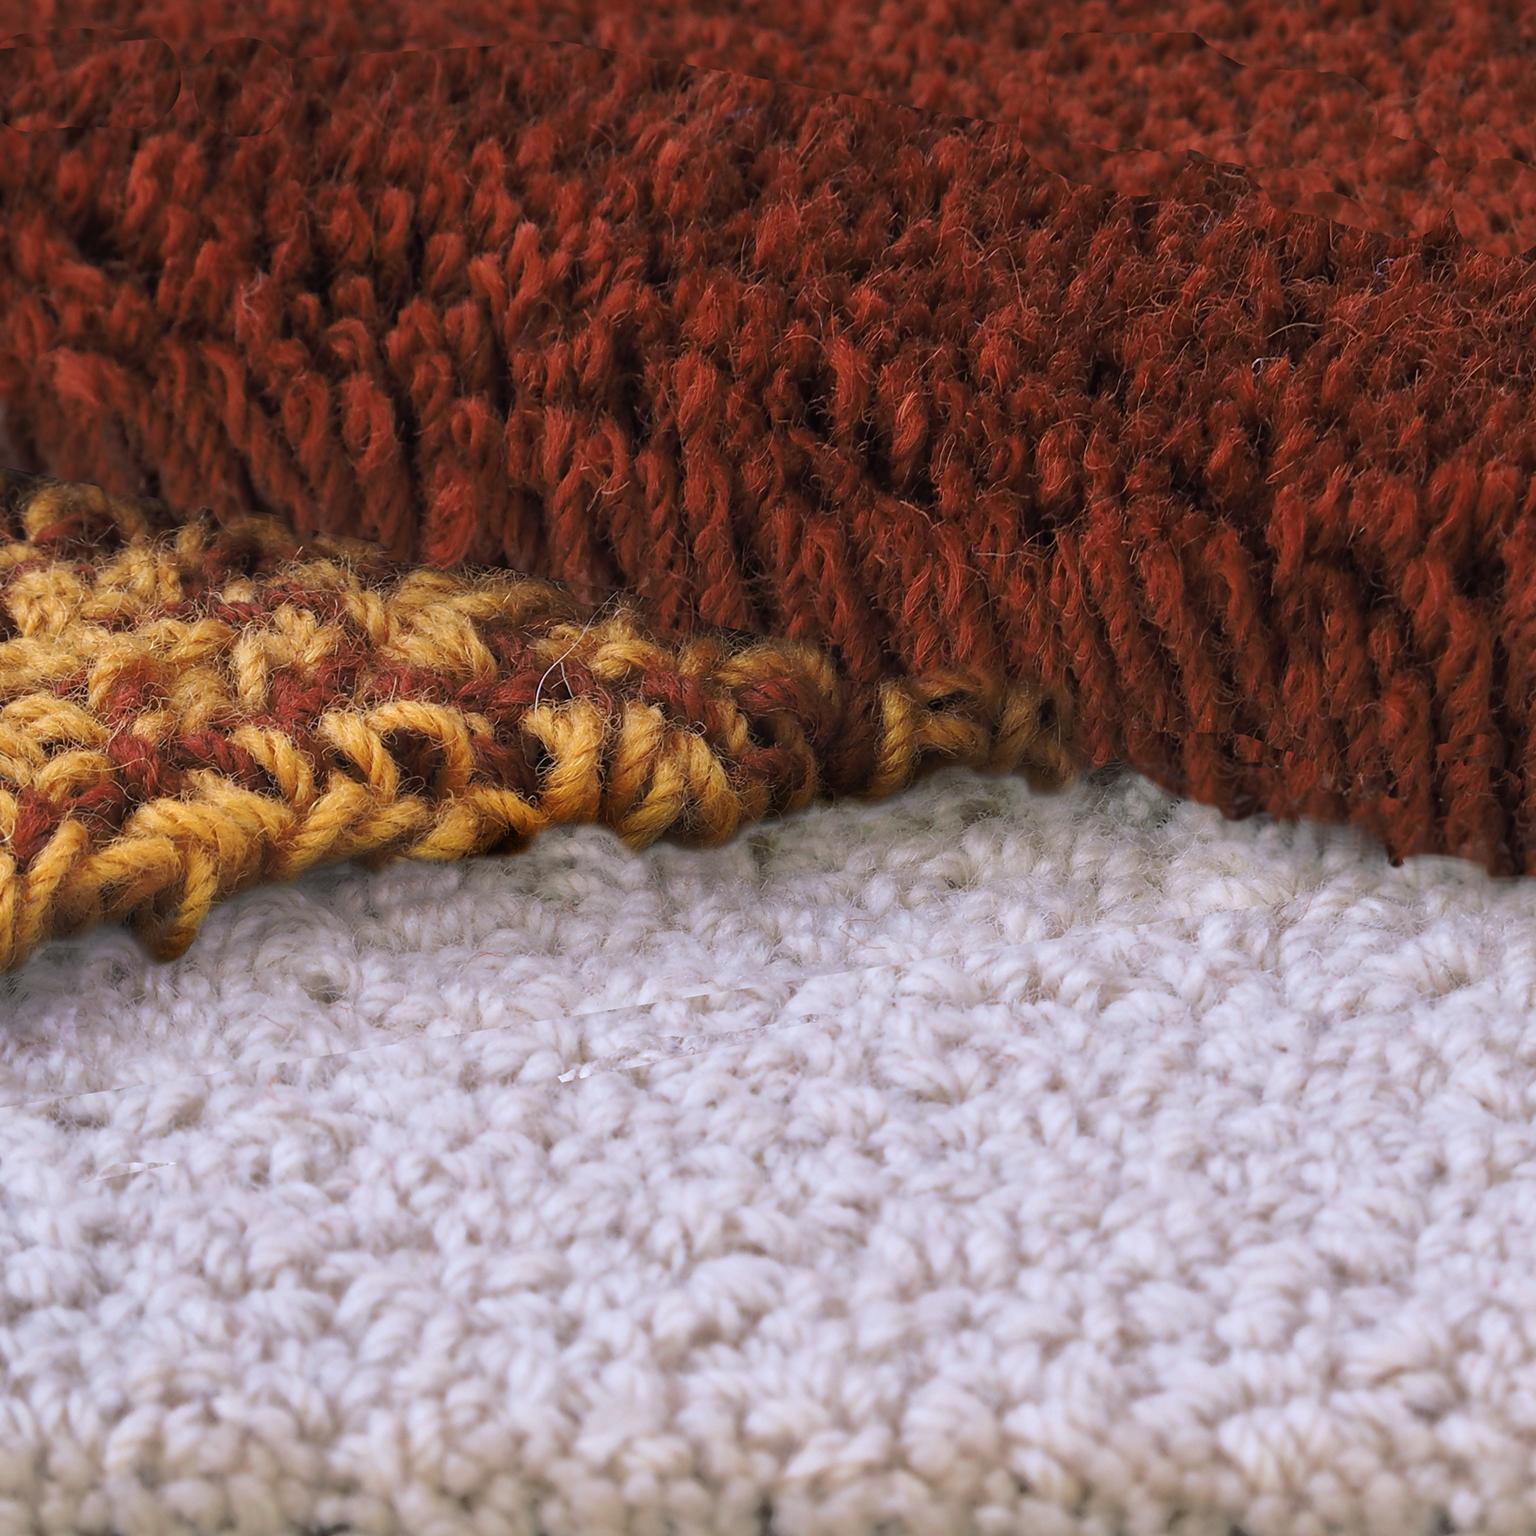 Zusammensetzung von 3 Teppichen aus 100% neuseeländischer Wolle
Entworfen von Seraina Lareida 
Hergestellt in Italien

Oci Triptych ist eine Komposition aus drei Teppichen, die zusammen ein einziges Design ergeben, das sich leicht an jede Art